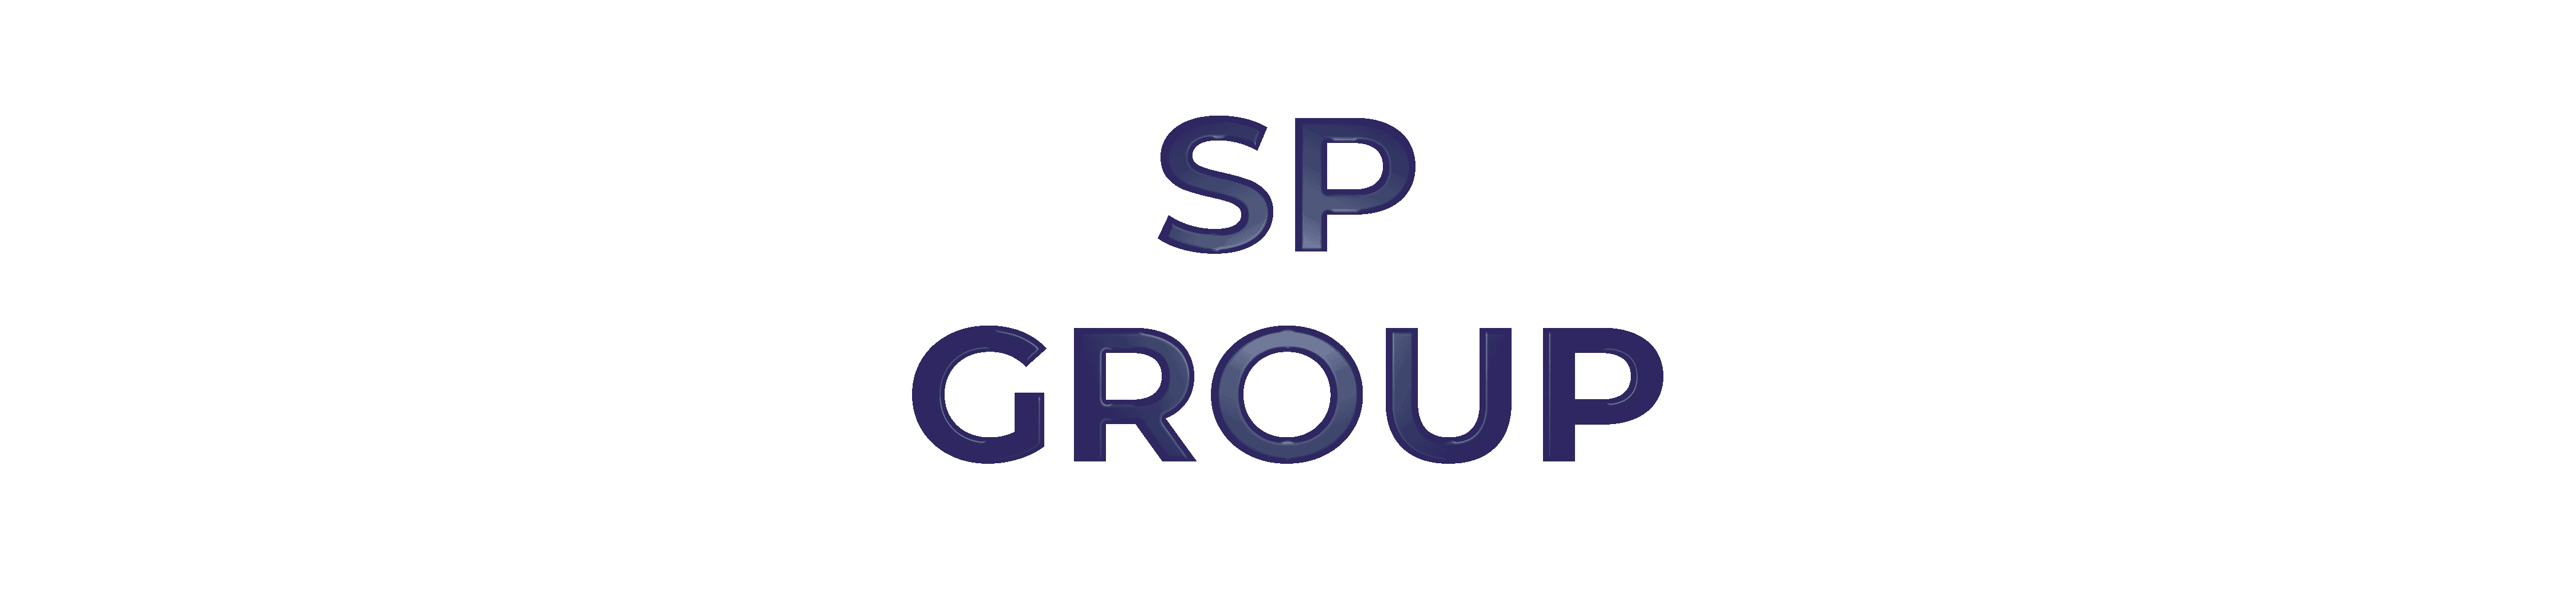 SP Group Client